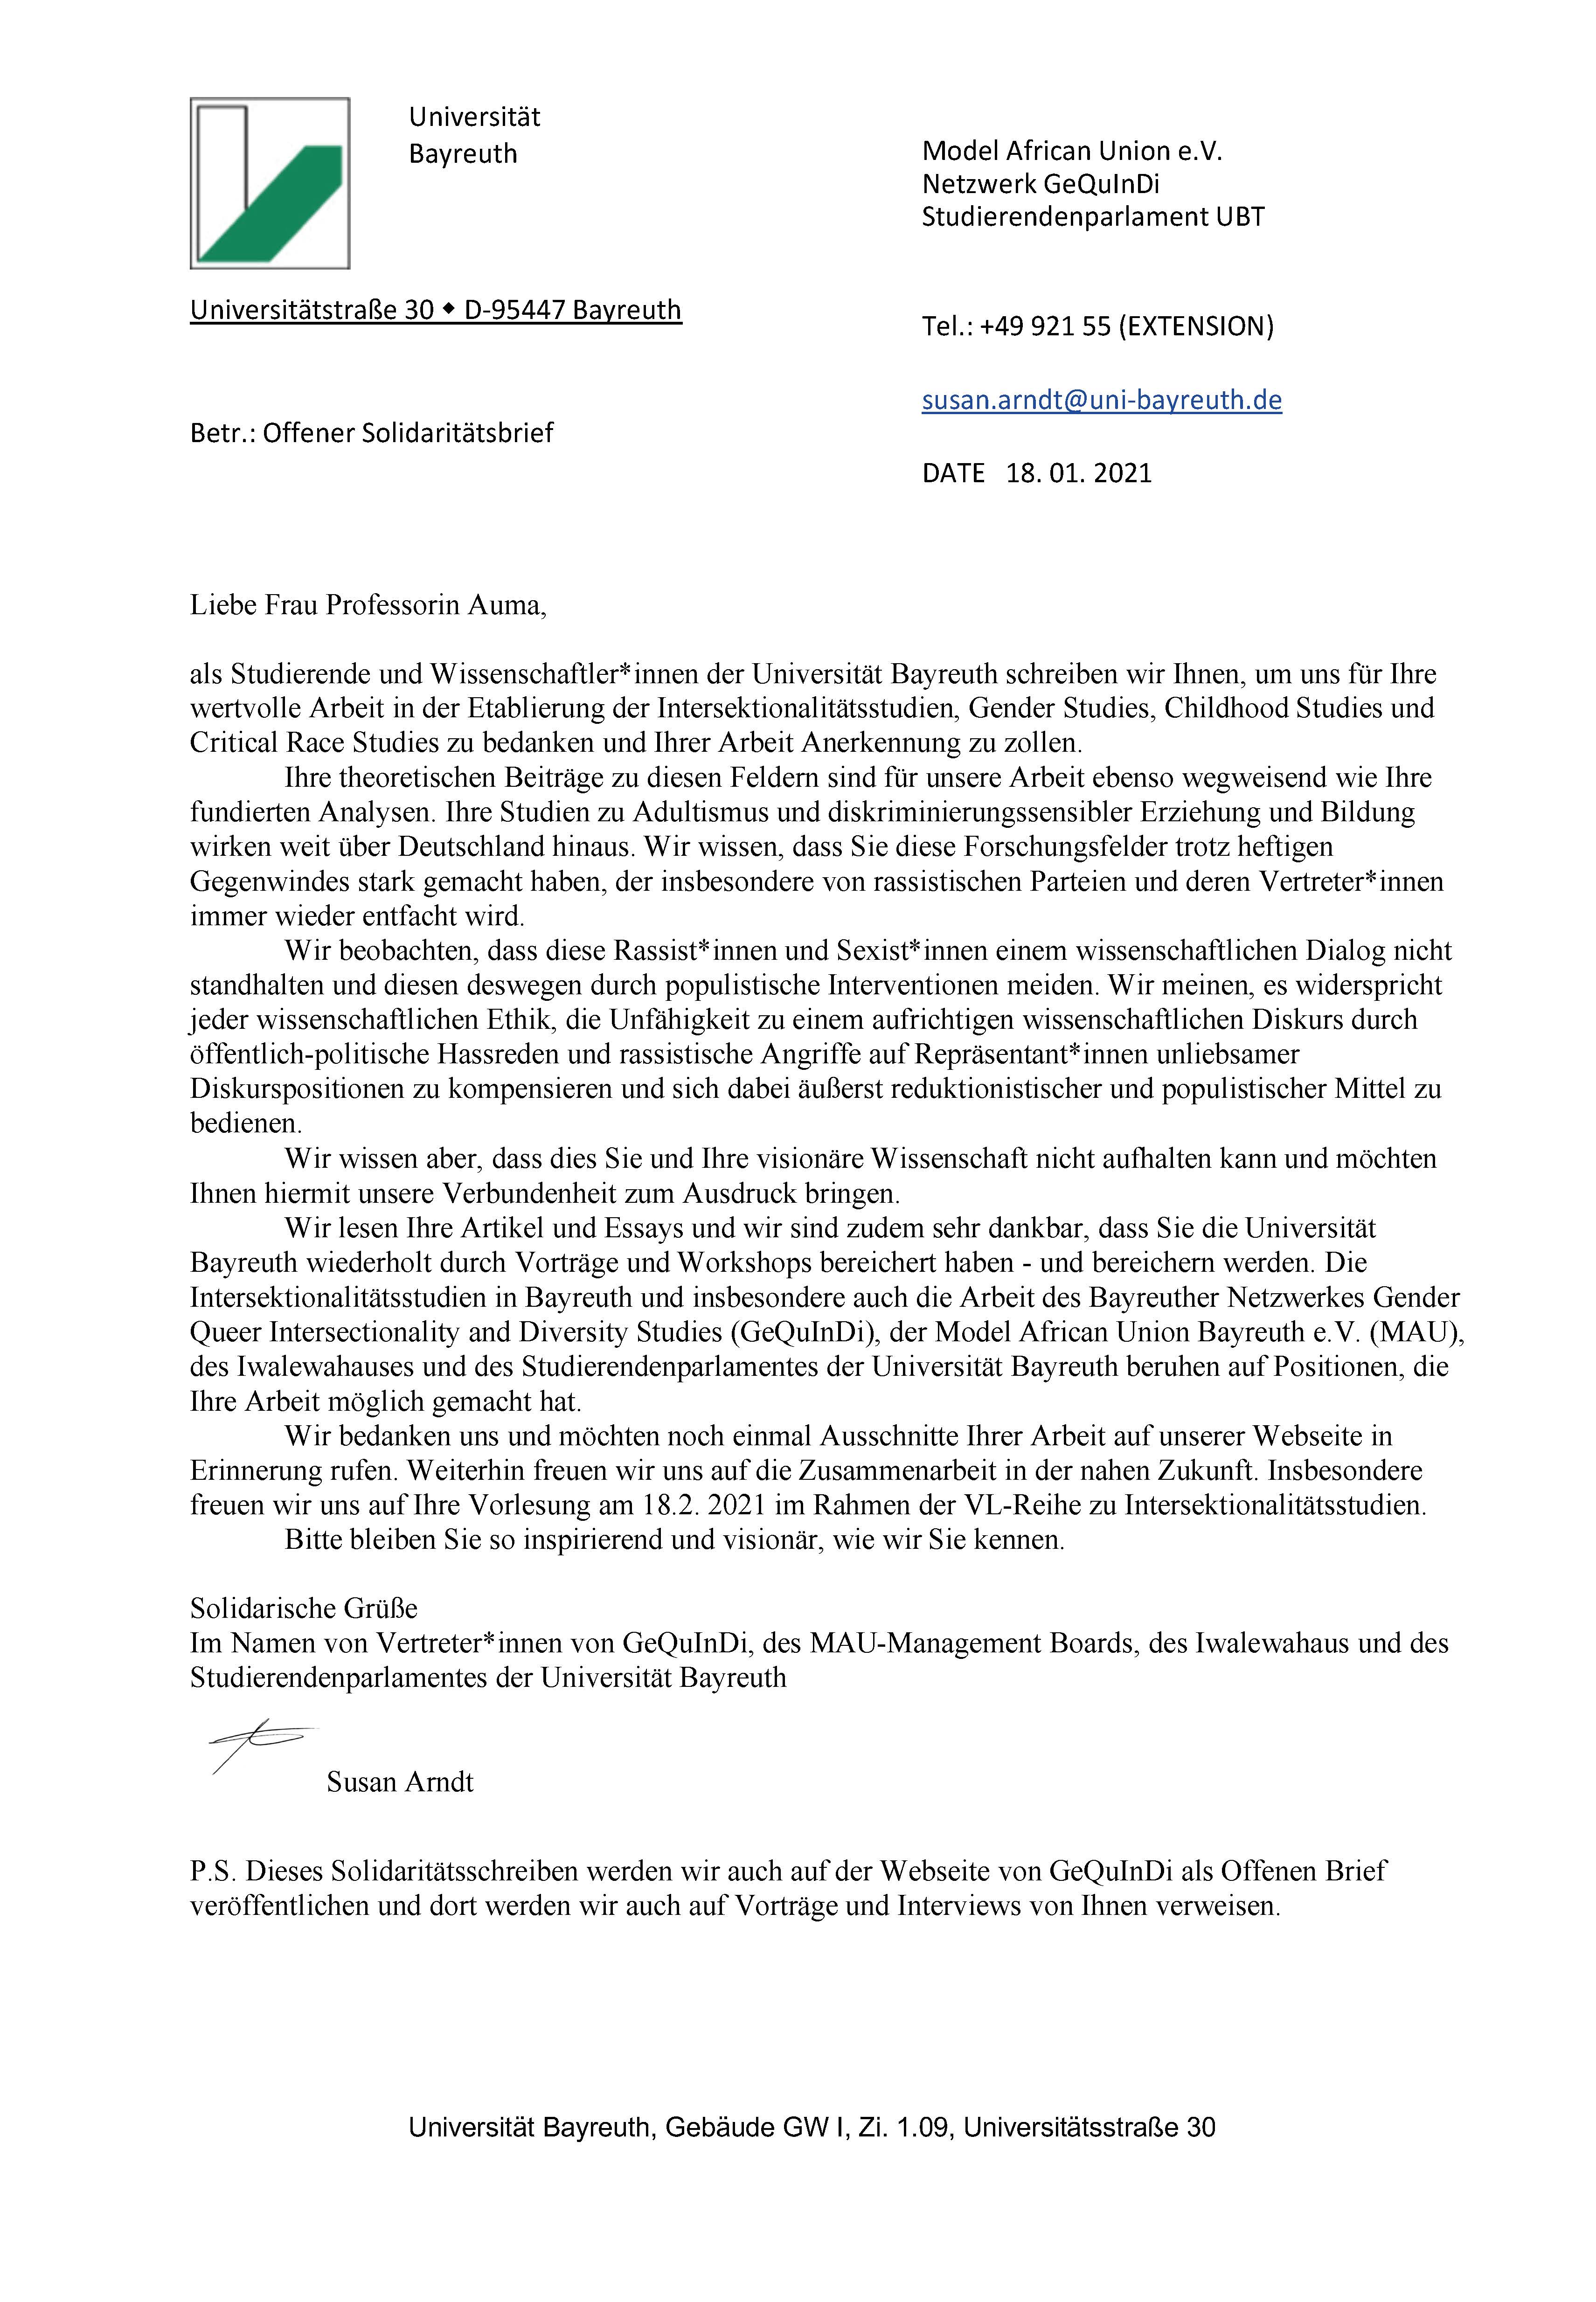 In einem offenen Brief bekundet Susan Arndt im Namen der Uni Bayreuth ihre Solidarität mit Professorin Auma, die zuletzt rassistisch angefeindet worden war.